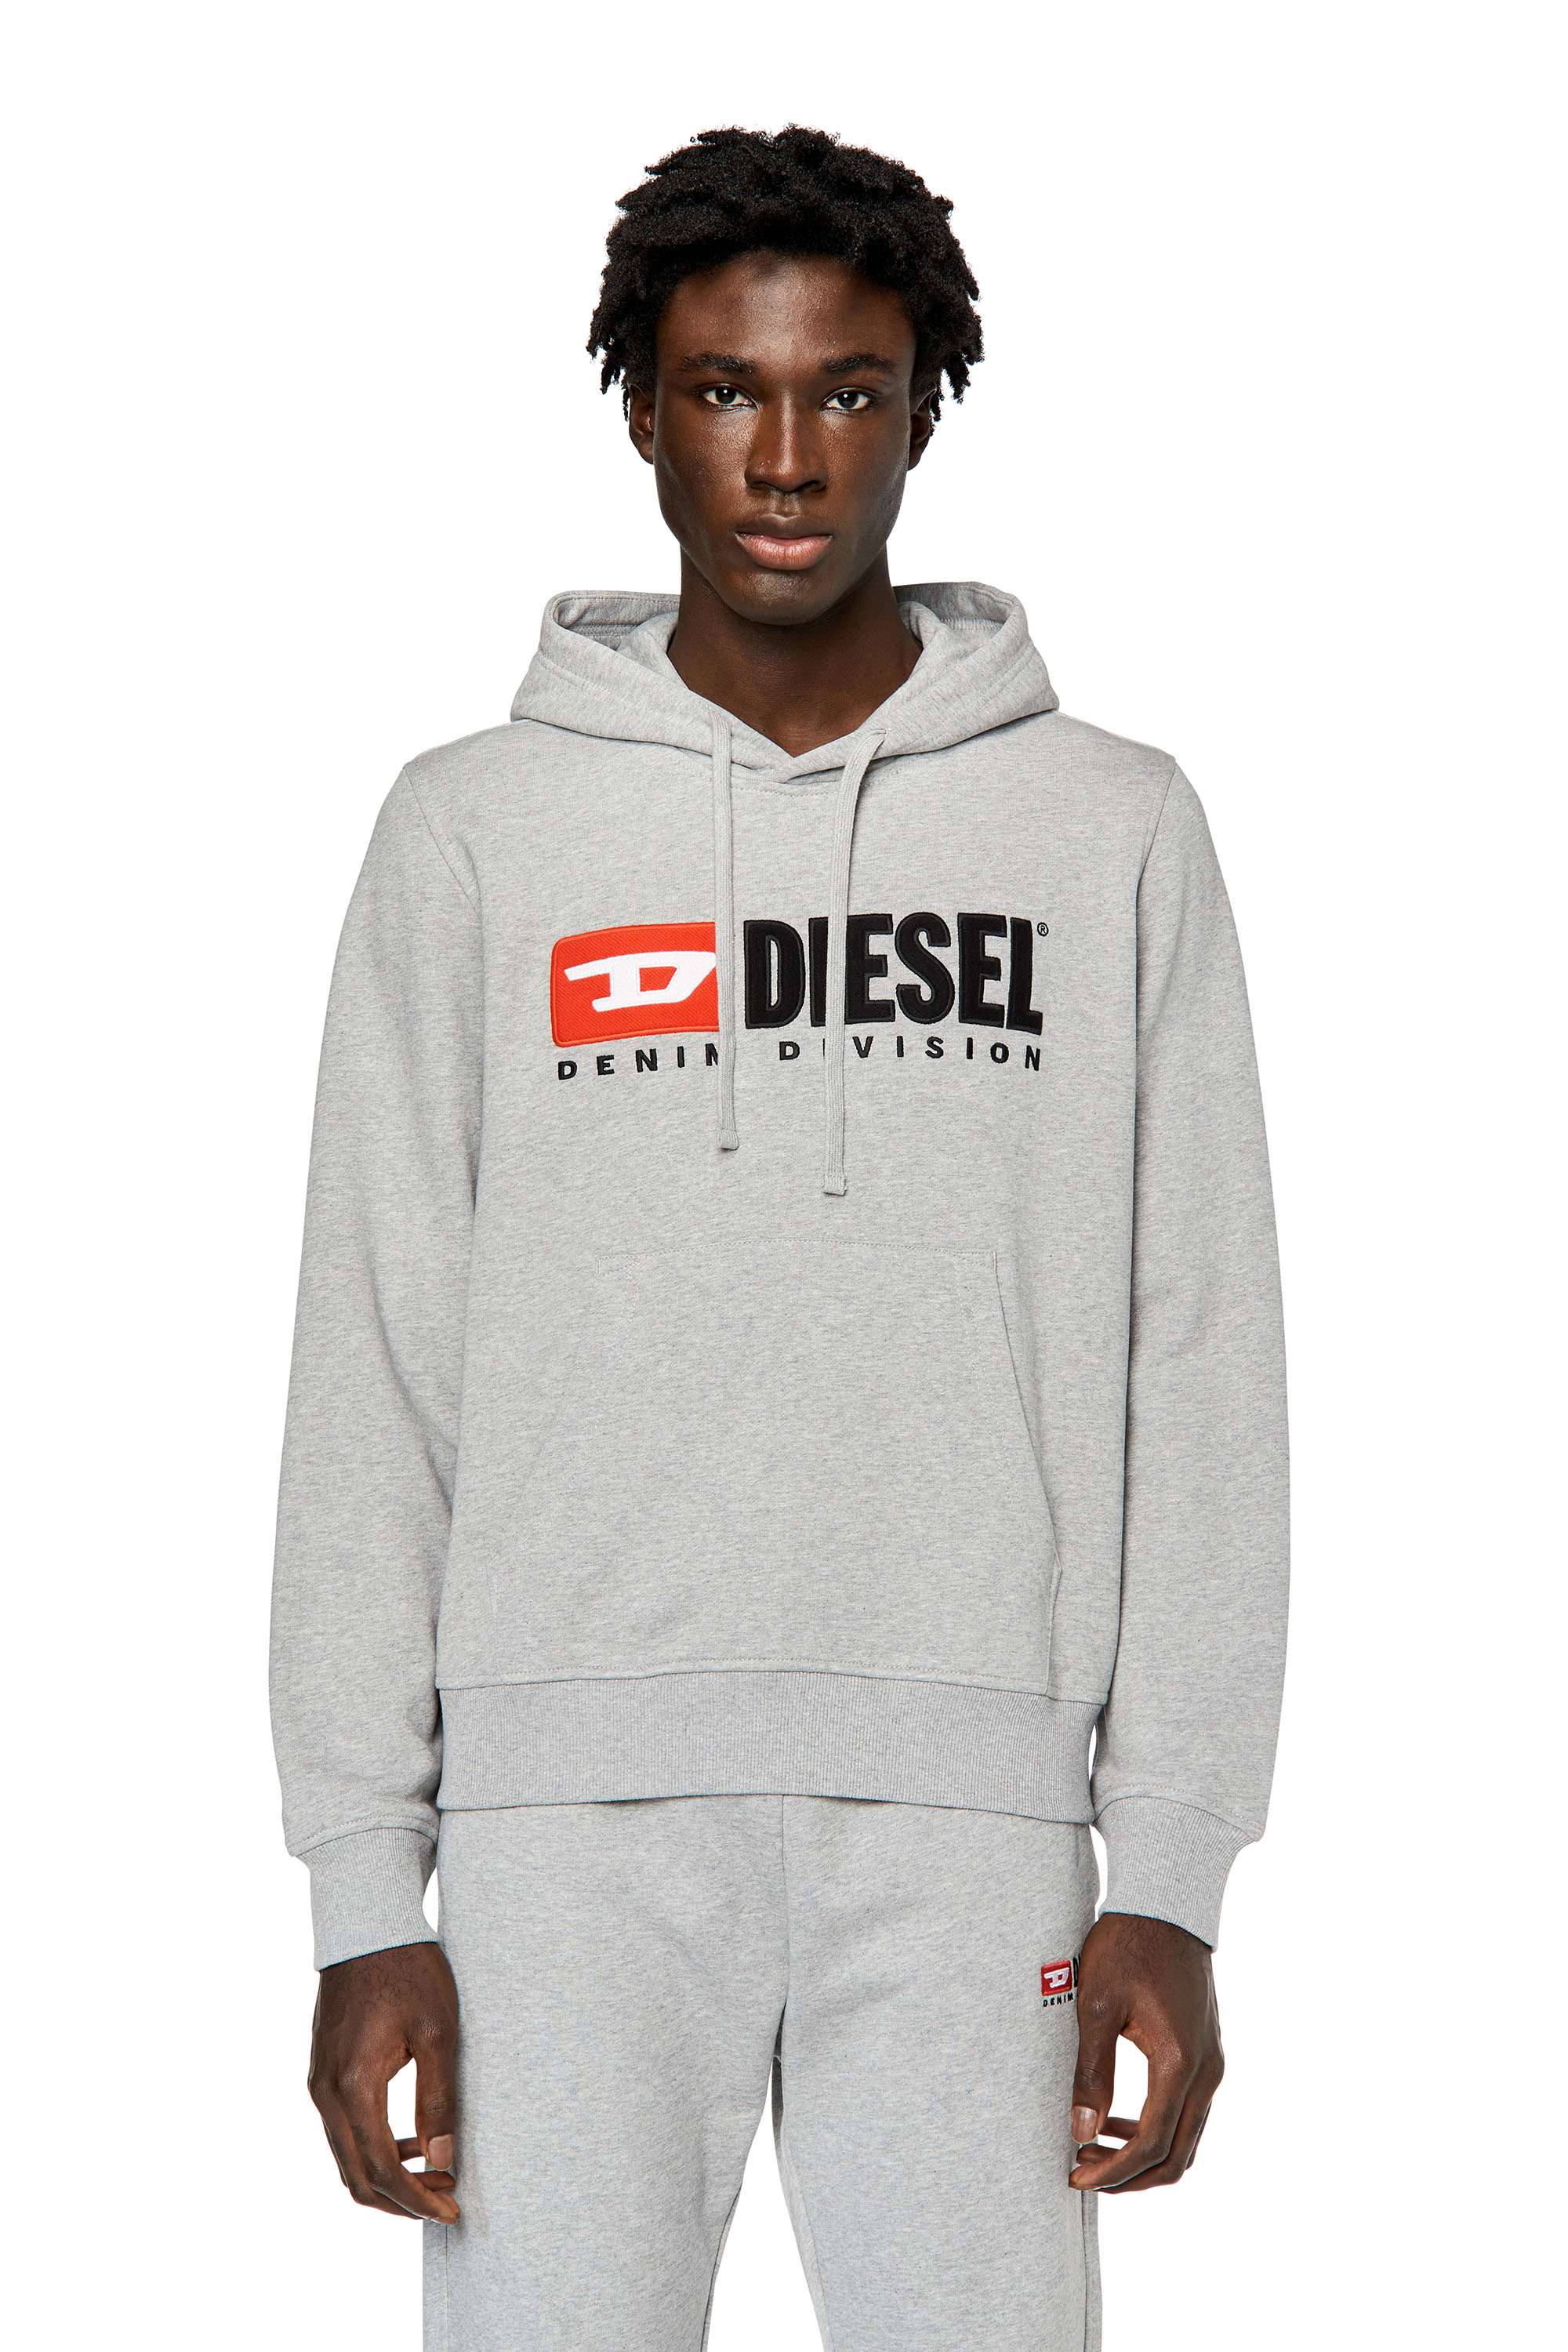 Diesel - Sweat-shirt à capuche avec logo appliqué - Pull Cotton - Homme - Gris